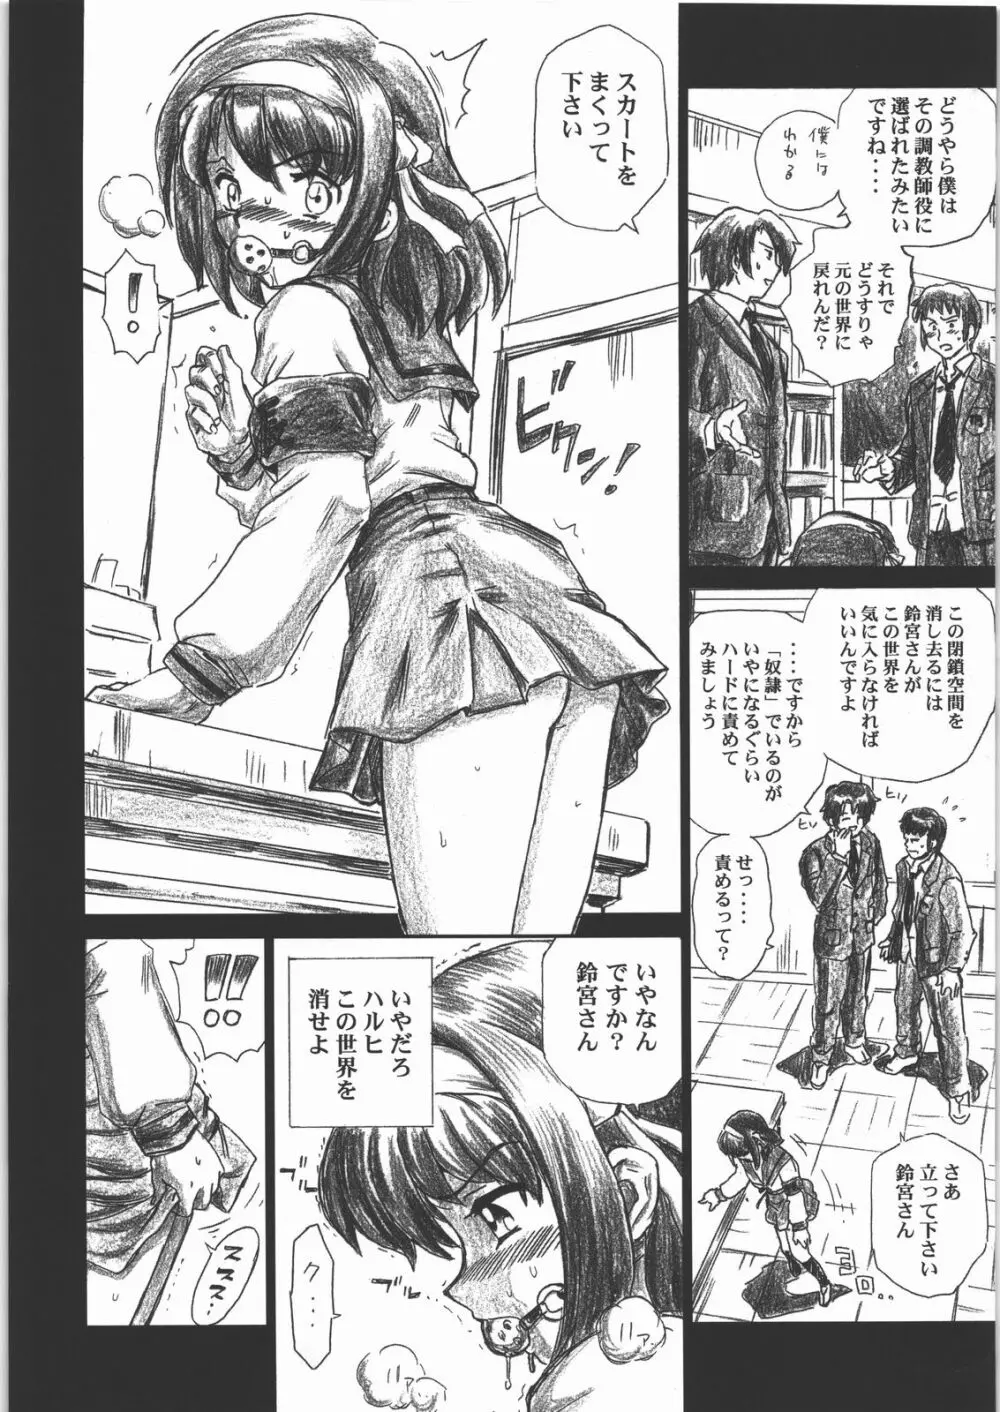 TAIL-MAN HARUHI SUZUMIYA BOOK 5ページ